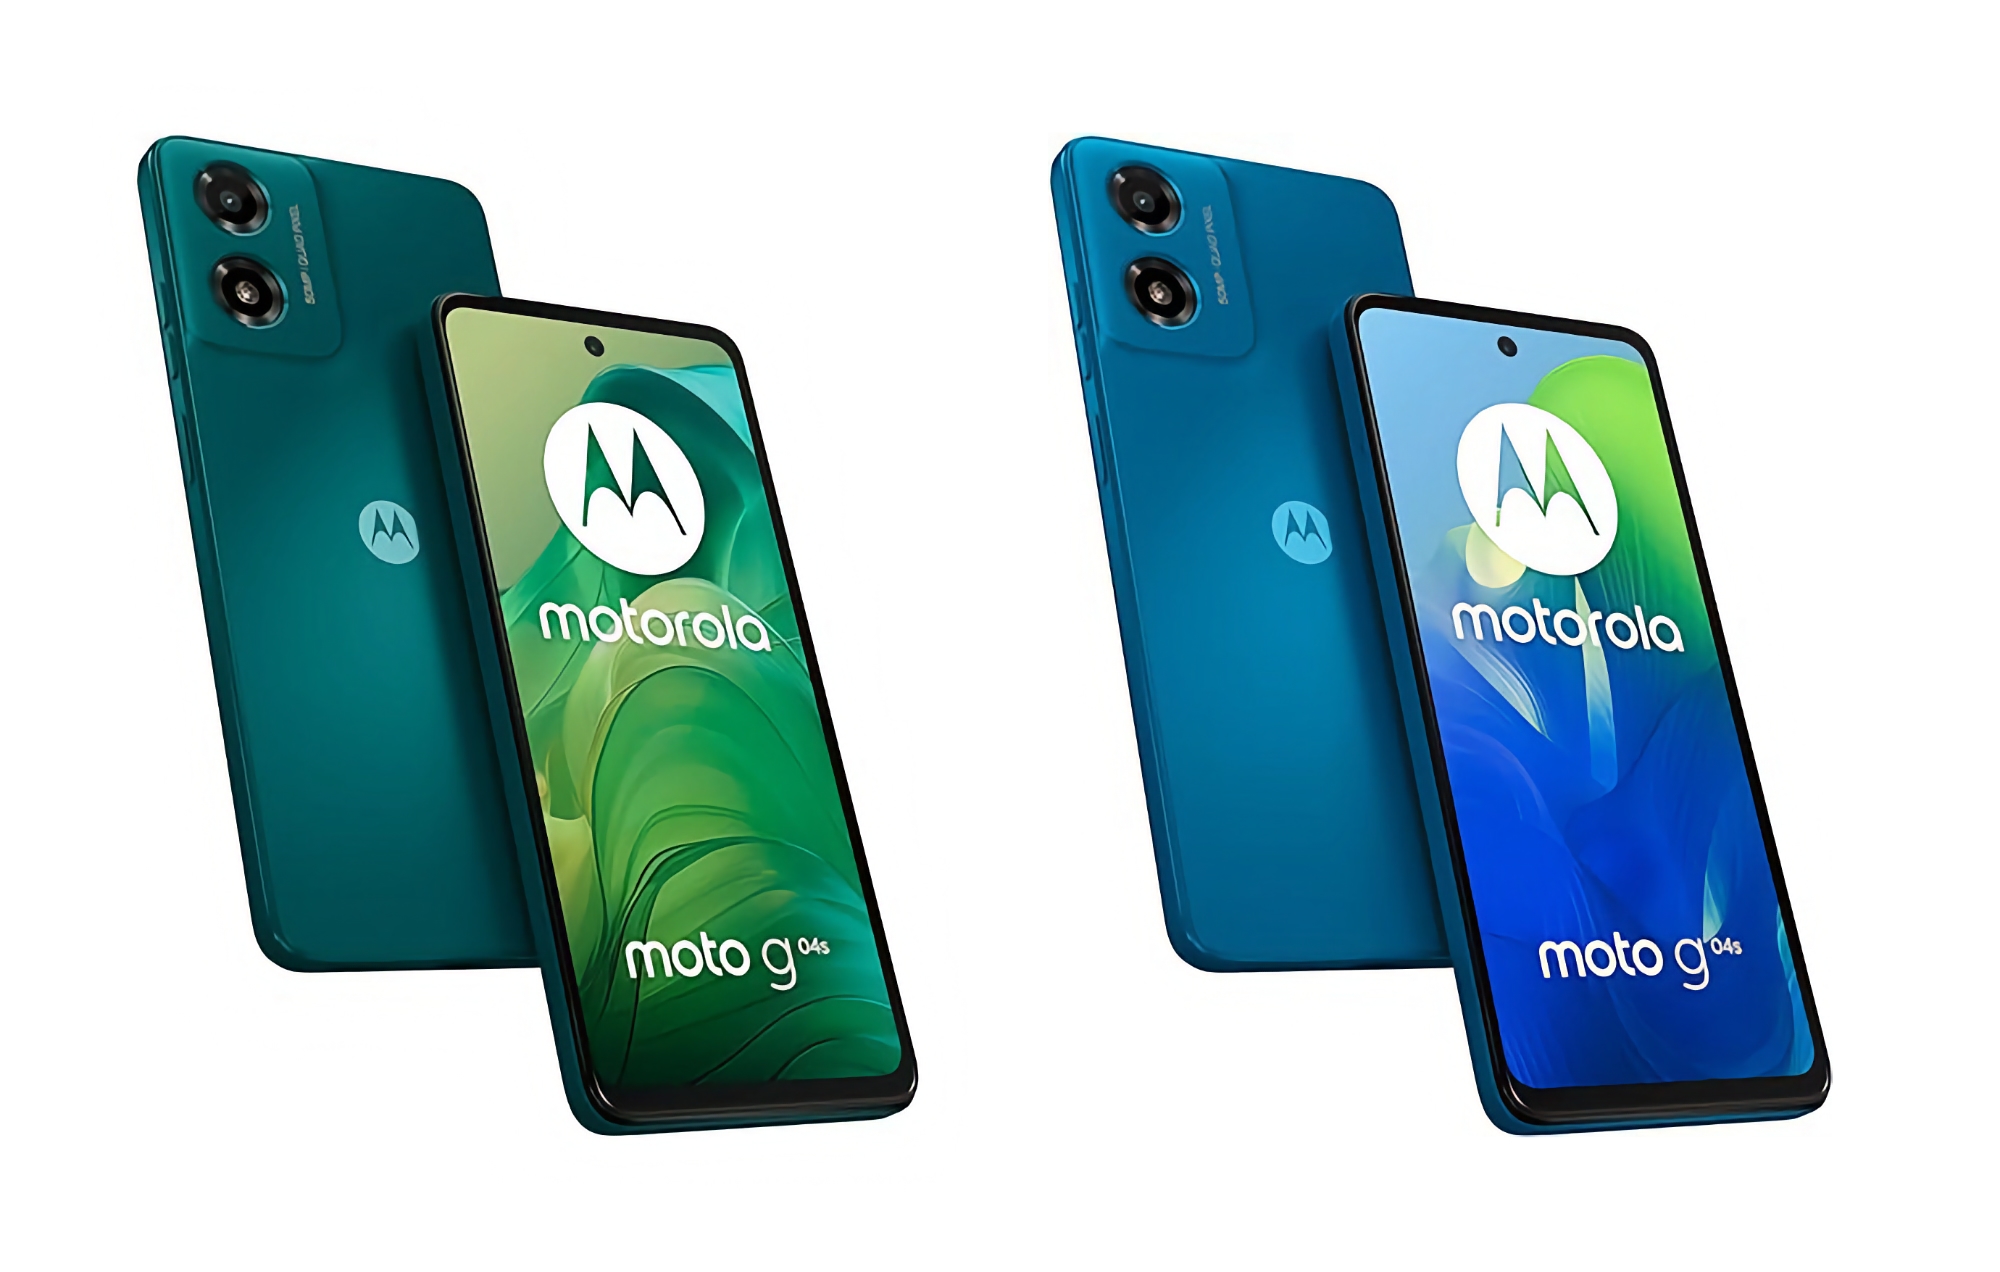 Motorola zaprezentowała Moto G04s z wyświetlaczem IPS 90 Hz, układem Unisoc T606, baterią 5000 mAh i ceną 100 euro